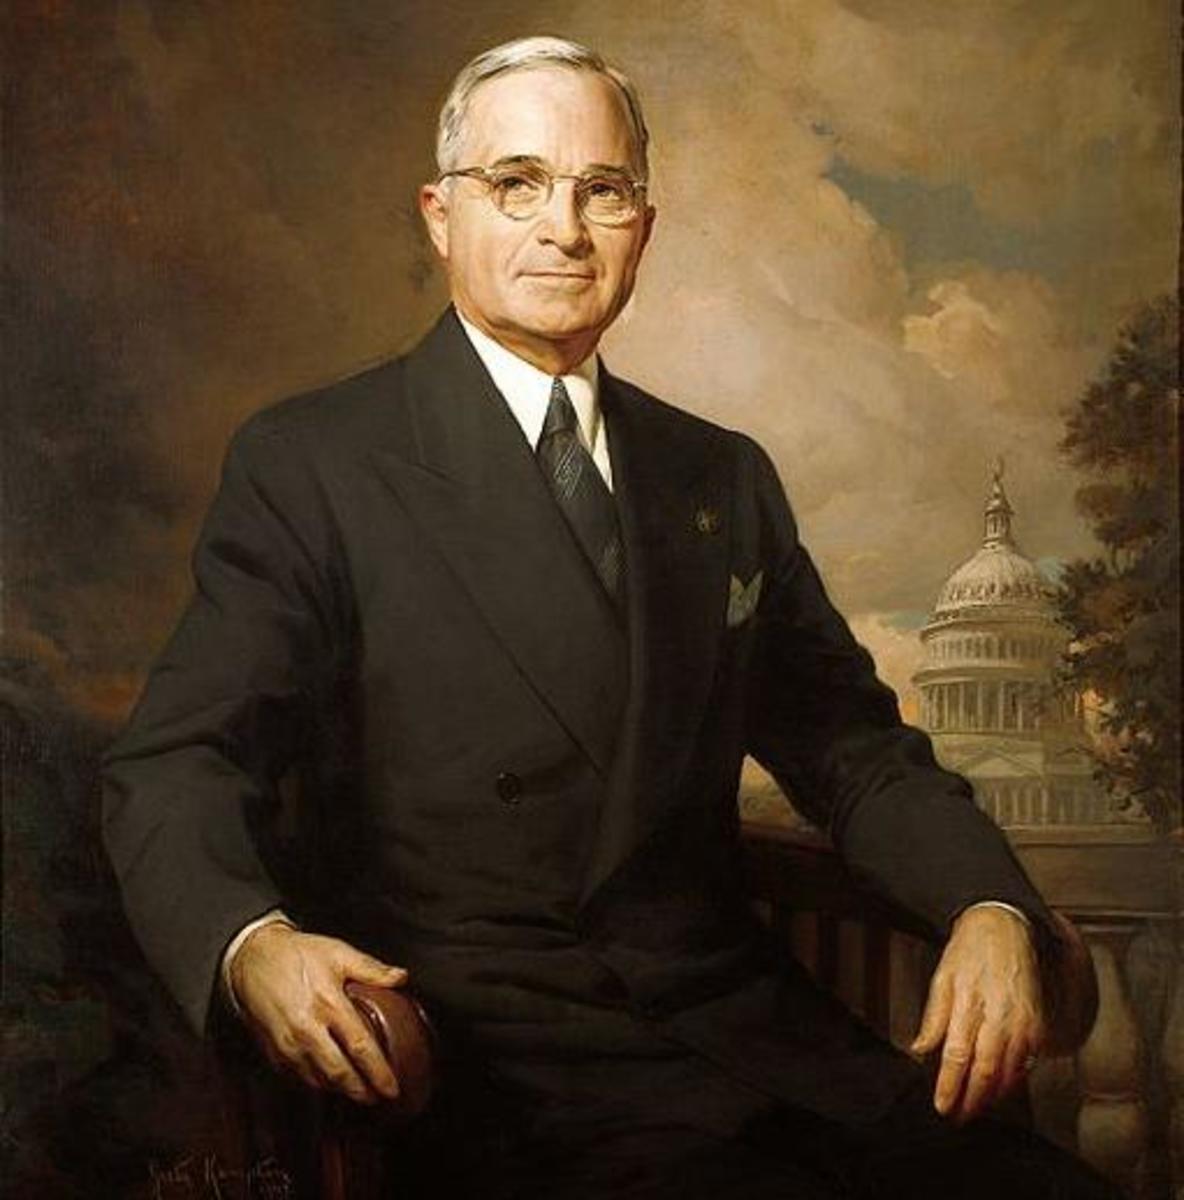 Î‘Ï€Î¿Ï„Î­Î»ÎµÏƒÎ¼Î± ÎµÎ¹ÎºÏŒÎ½Î±Ï‚ Î³Î¹Î± Harry Truman